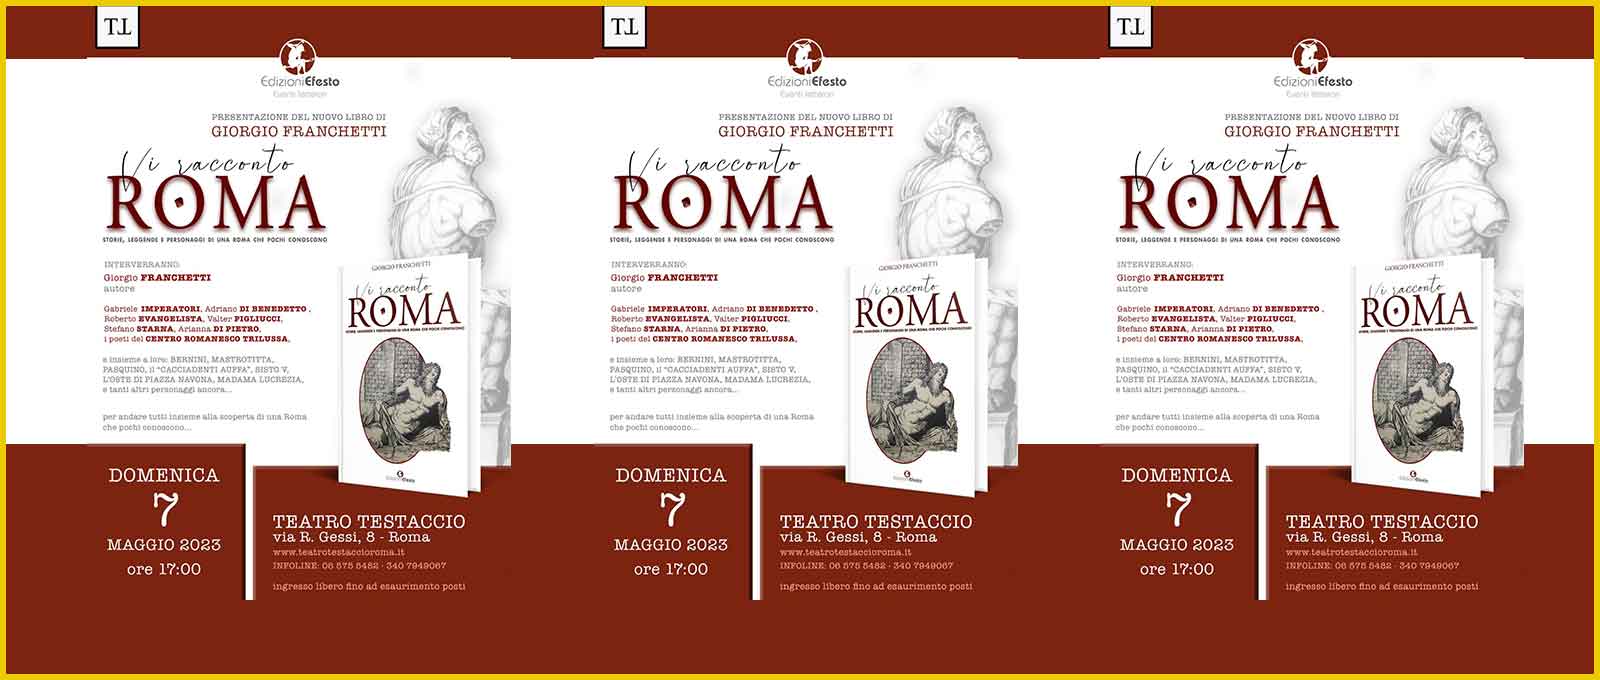 Teatro Testaccio “Vi racconto Roma”.